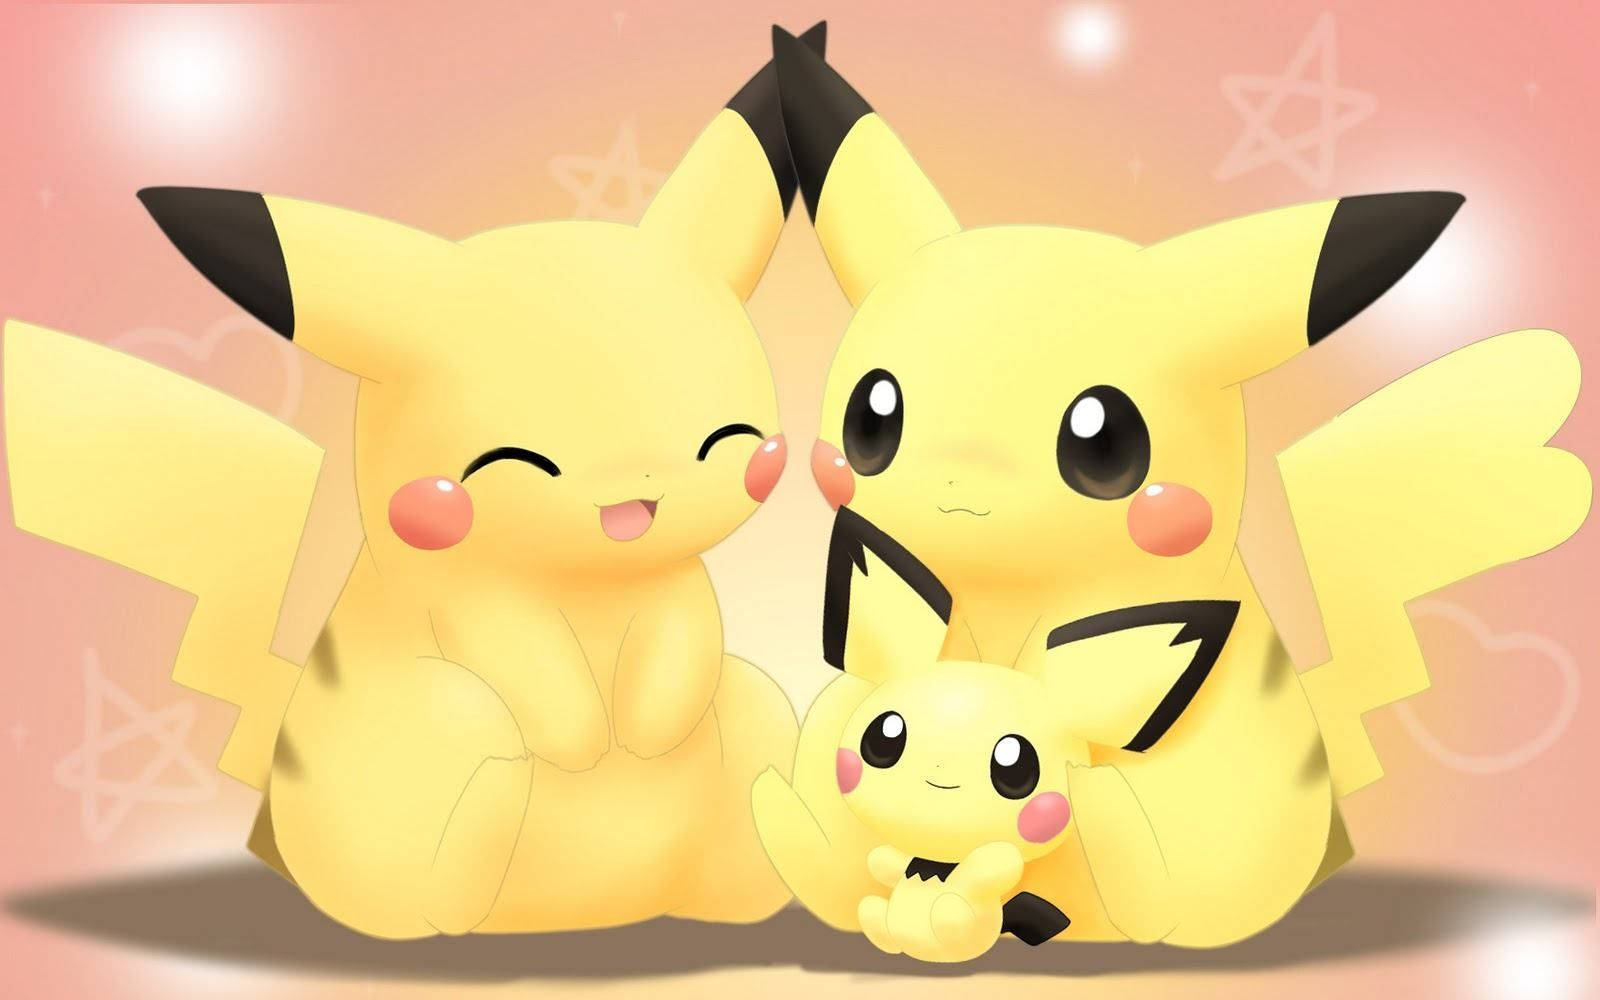 Cute Pokemon Pikachu Family Wallpaper